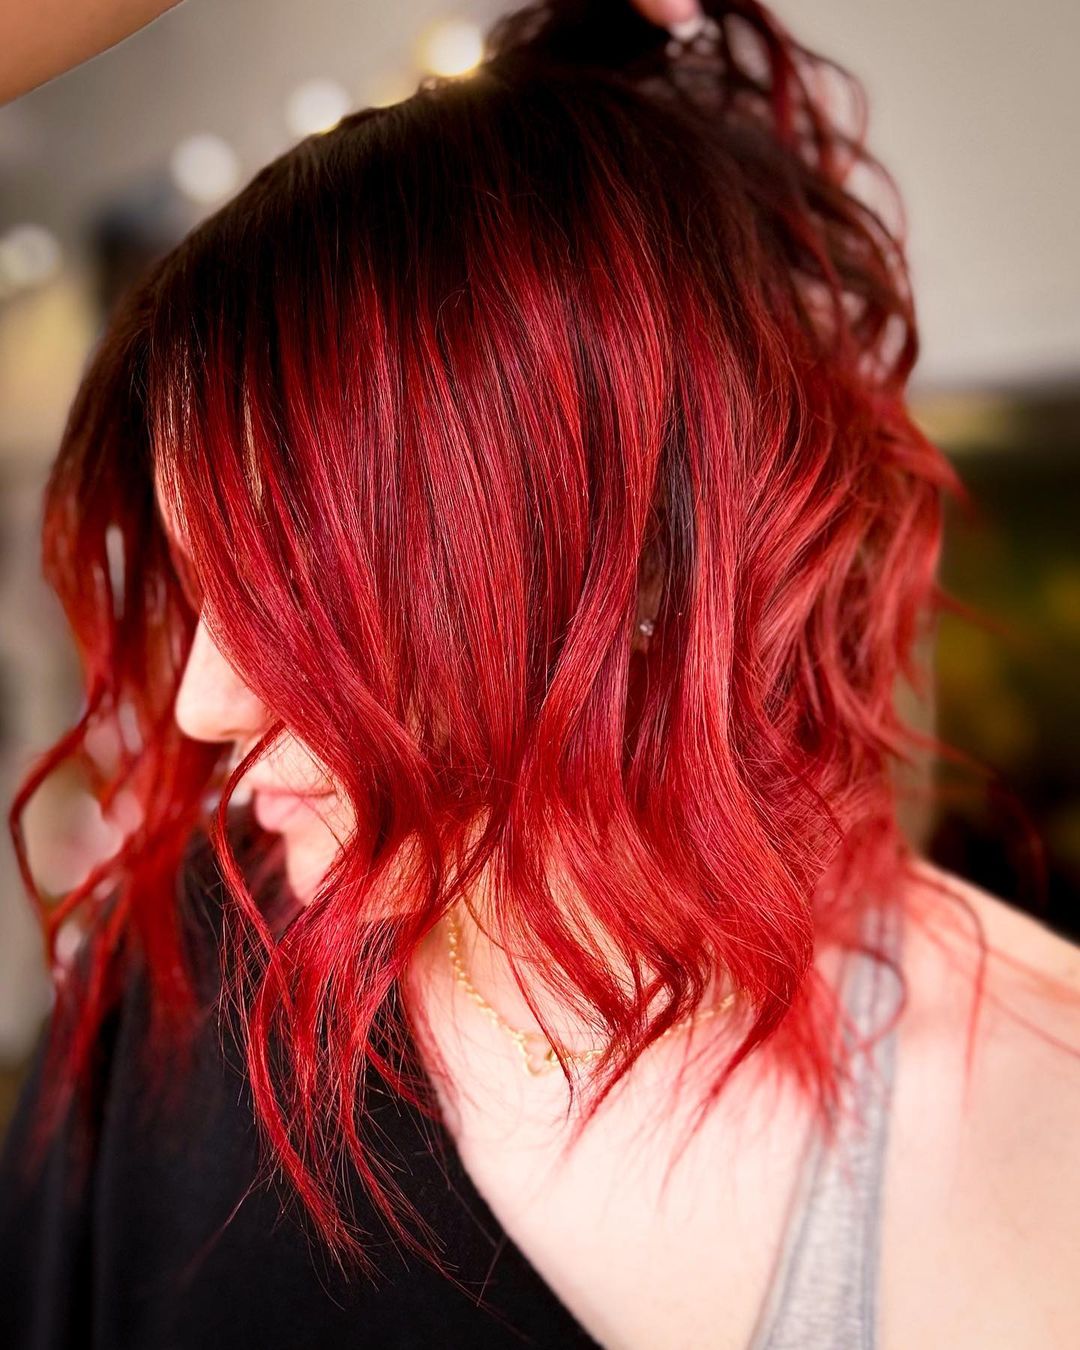 pelo rojo brillante de longitud media